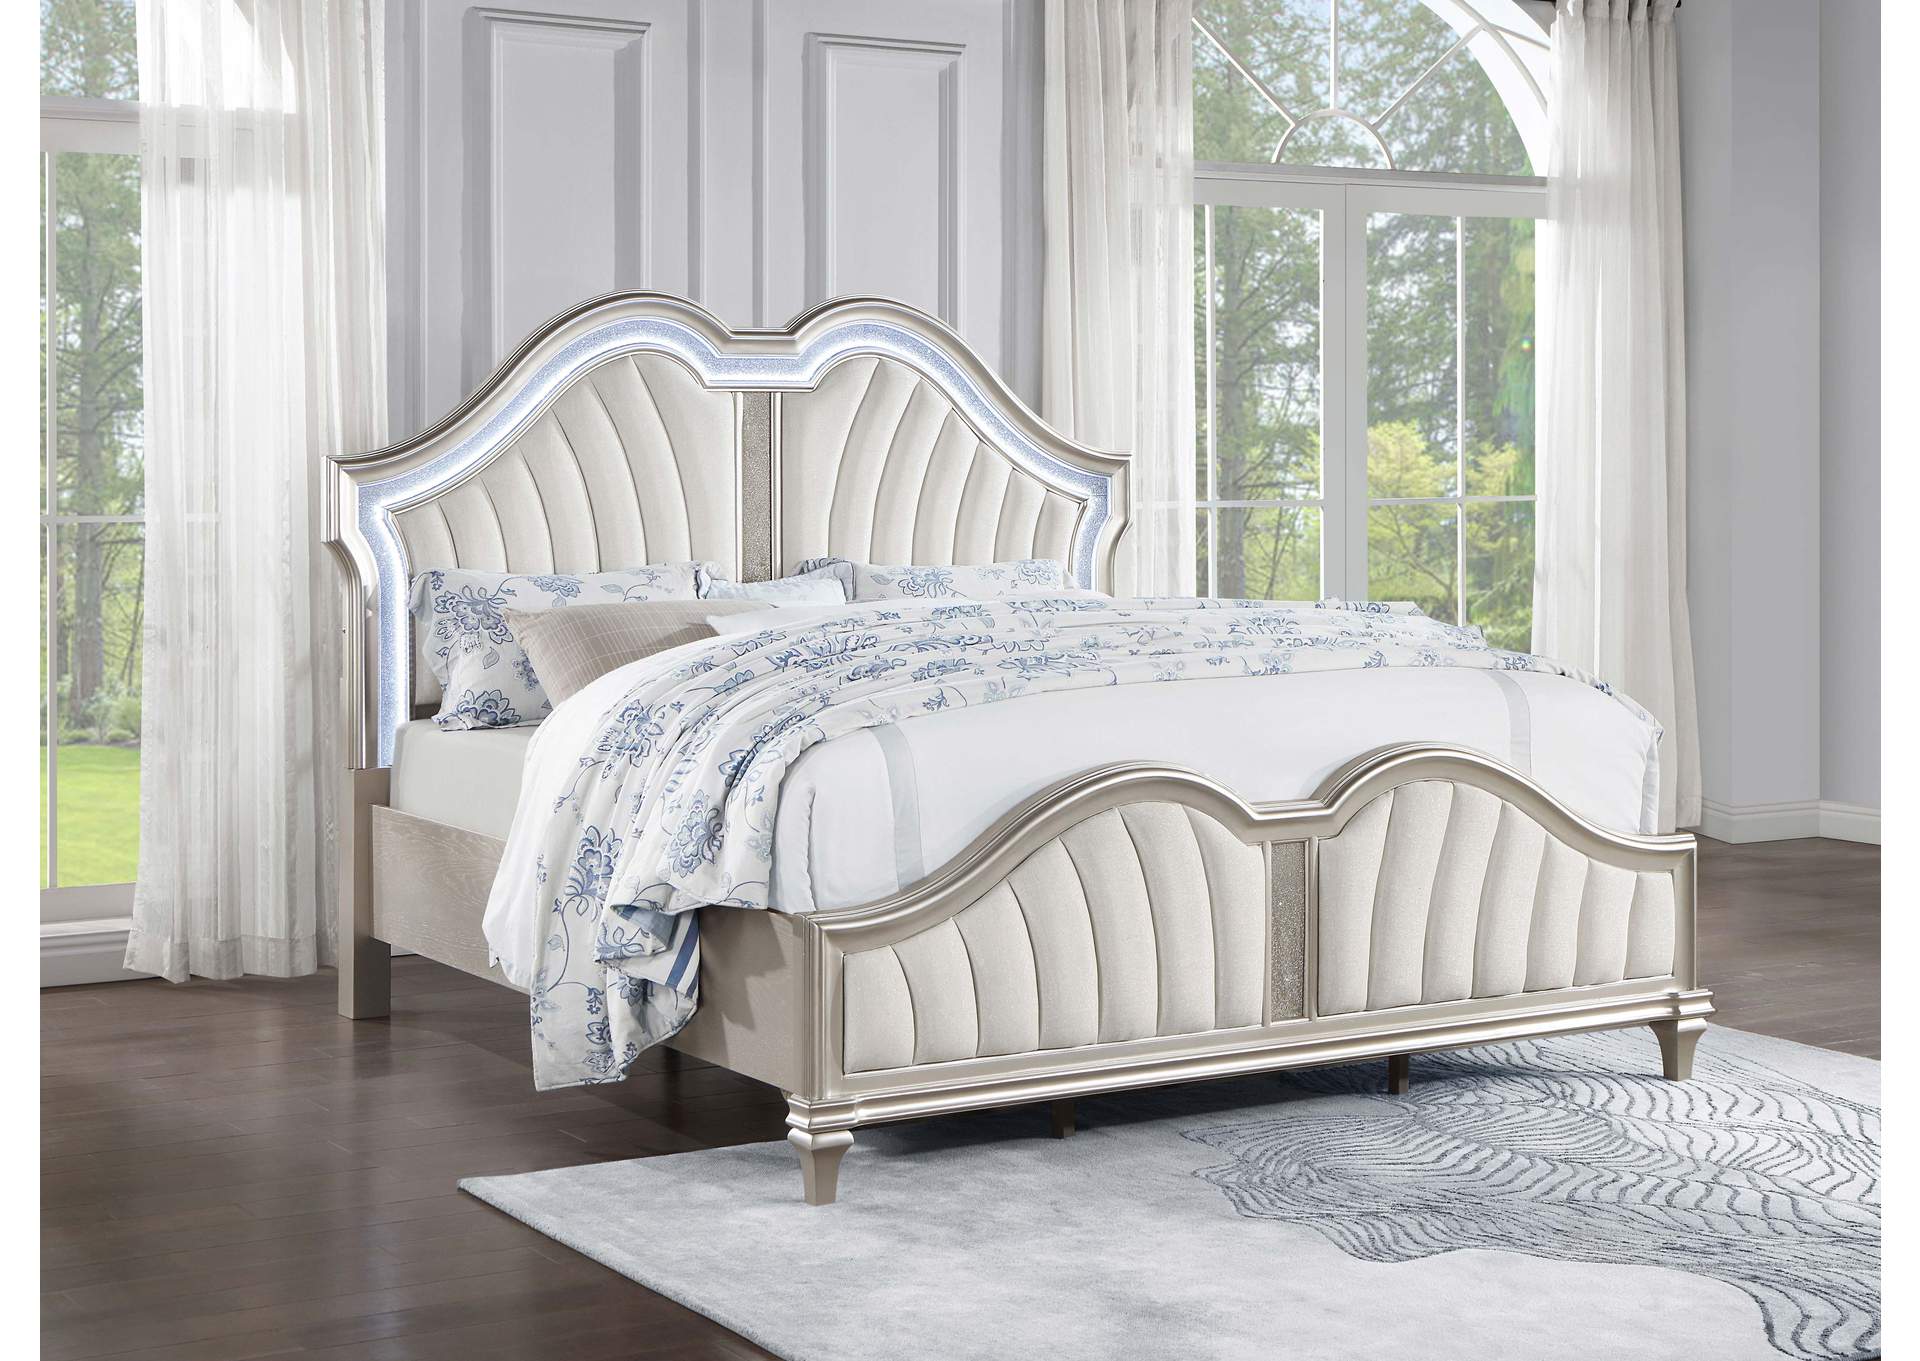 Evangeline Tufted Upholstered Platform California King Bed Ivory and Silver Oak,Coaster Furniture